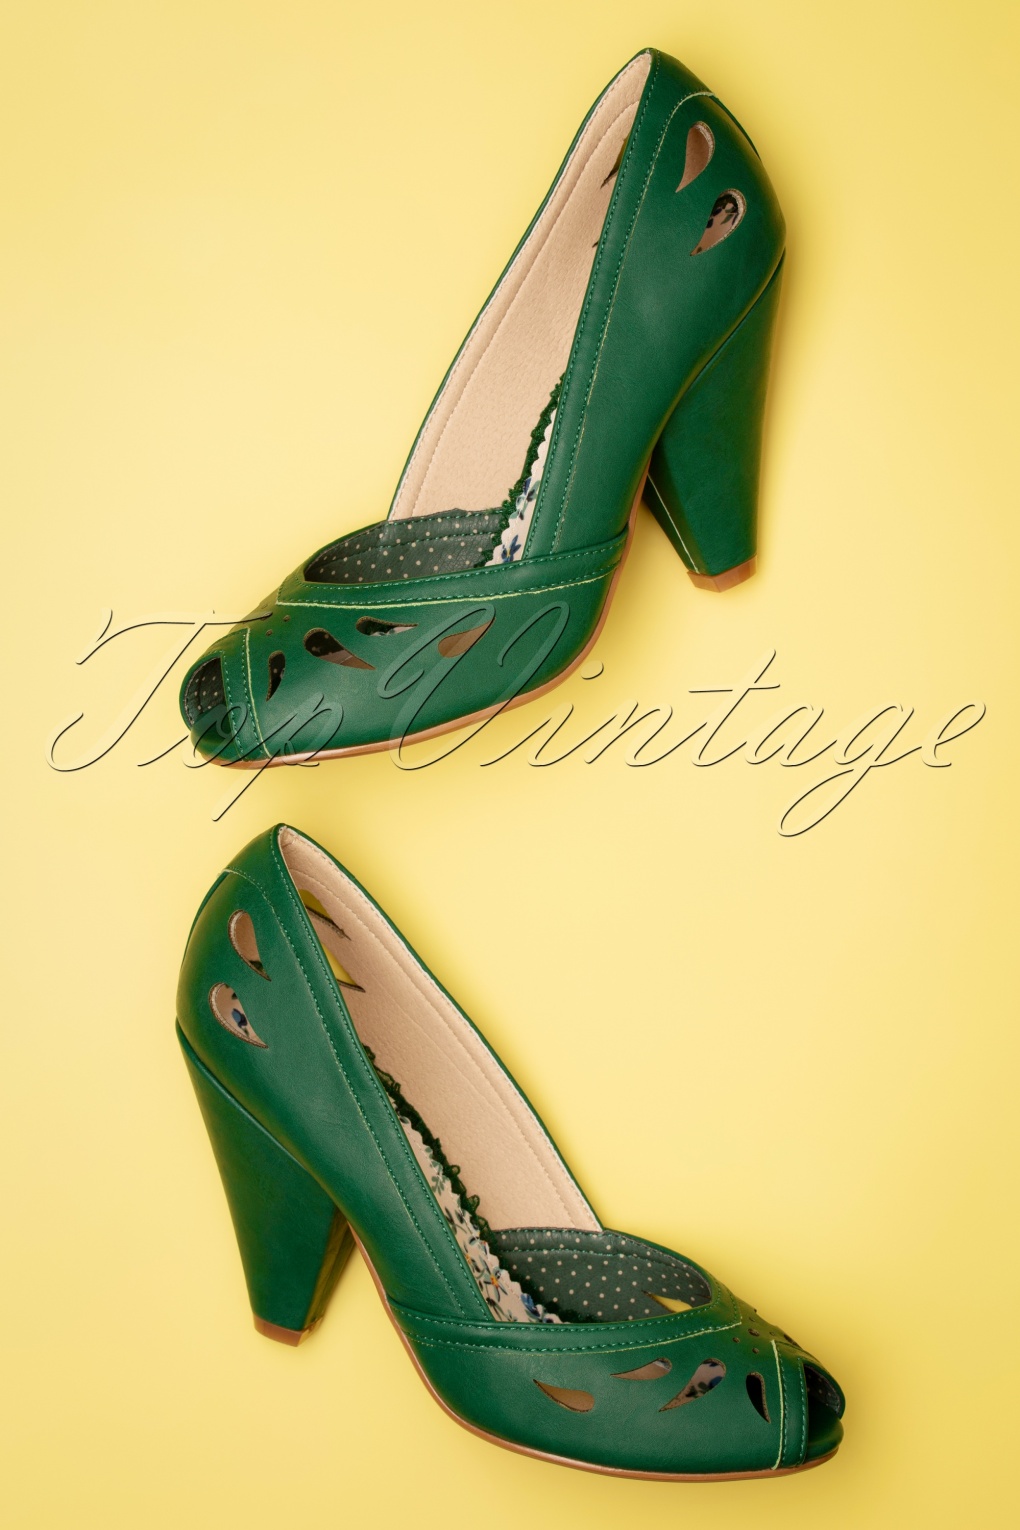 dark green pumps shoes